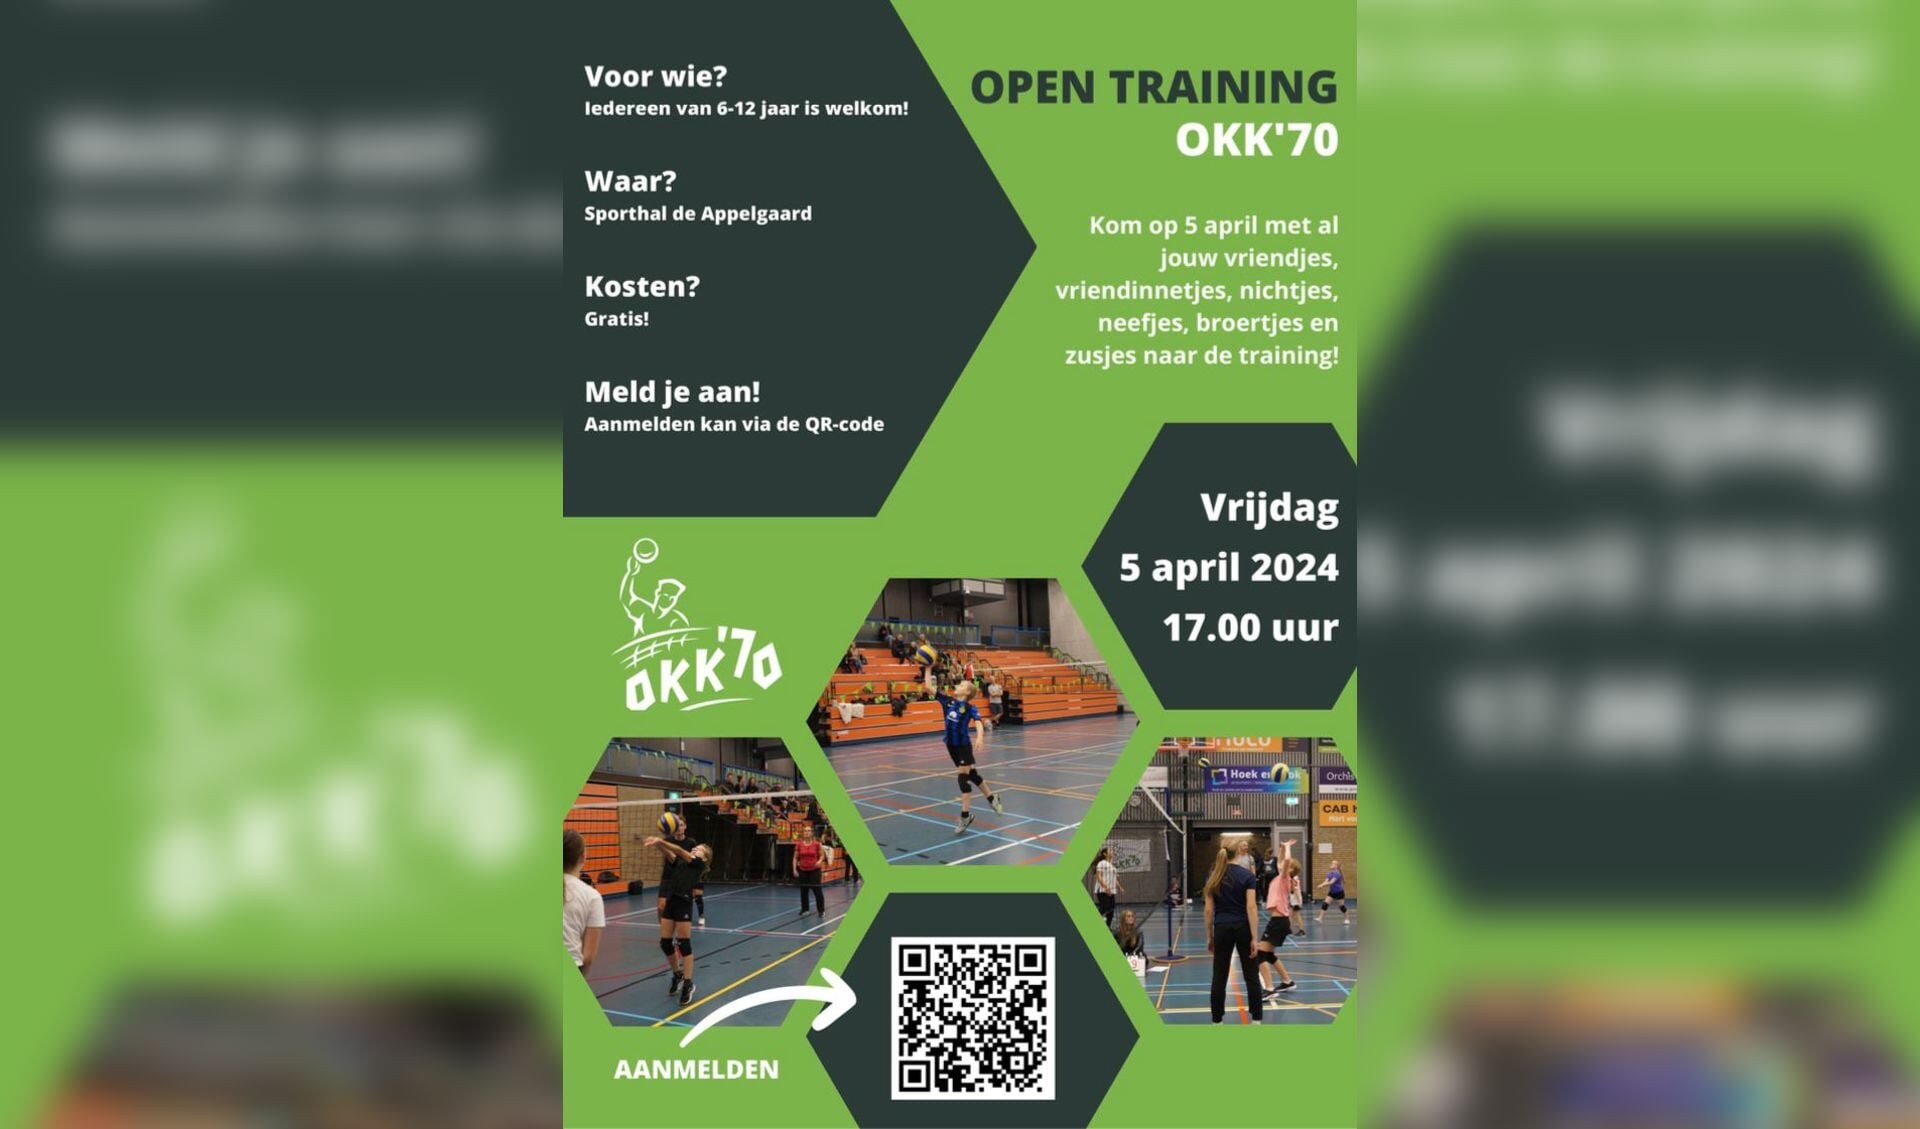 Open training OKK'70